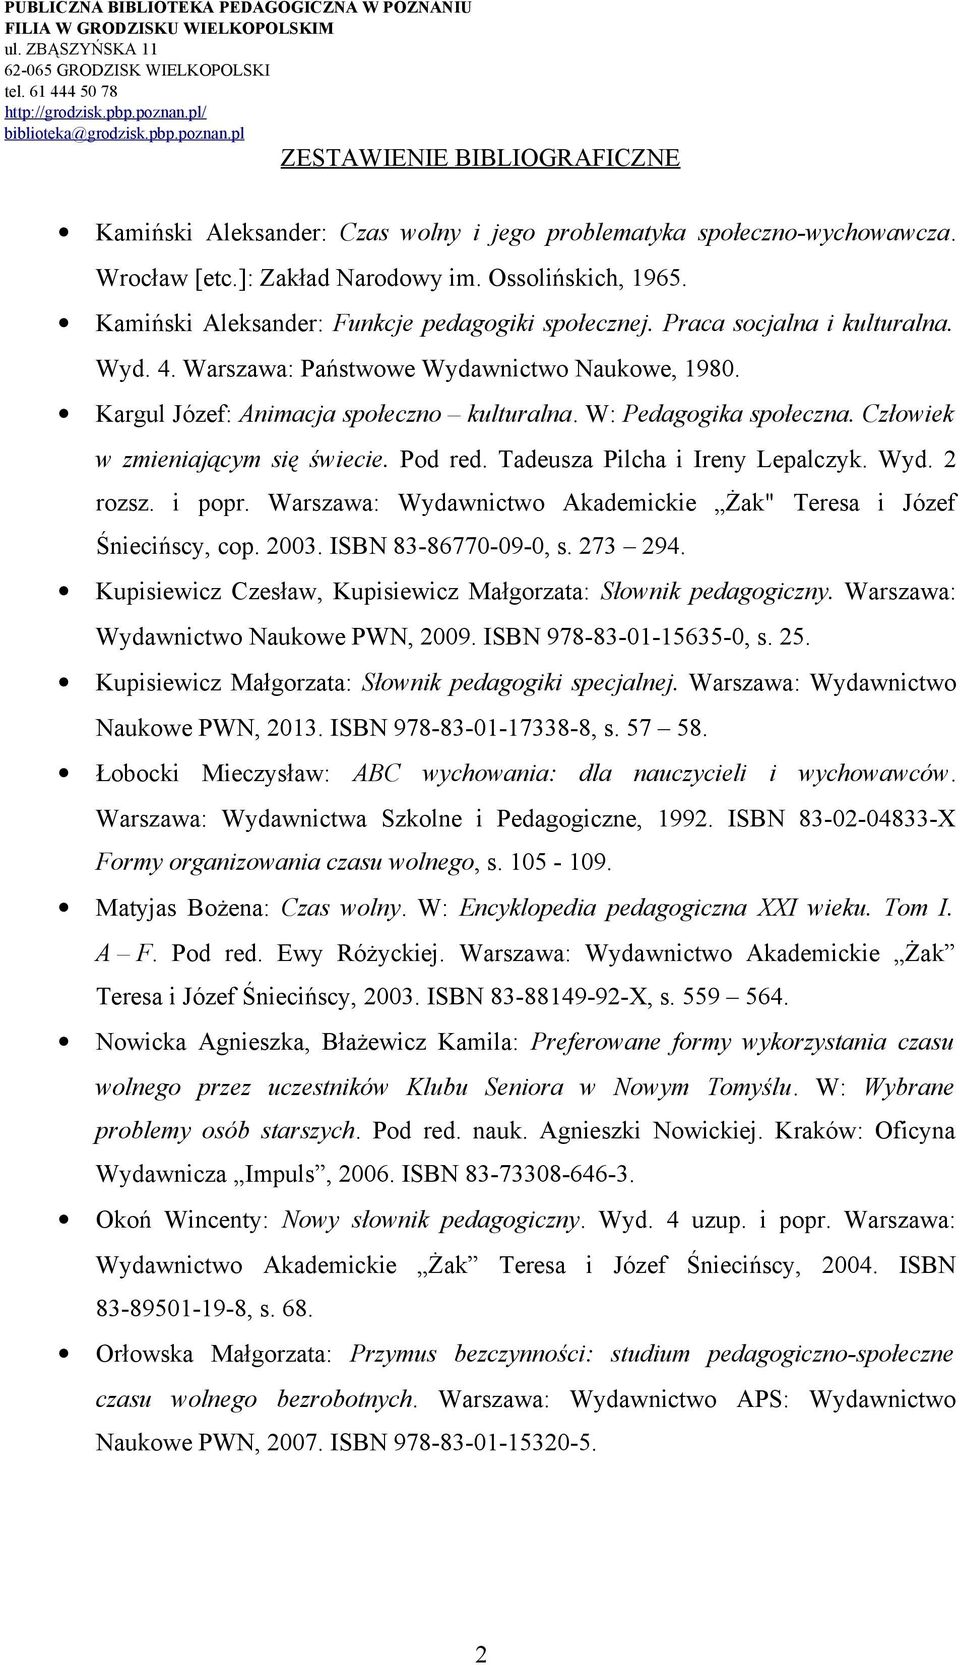 Tadeusza Pilcha i Ireny Lepalczyk. Wyd. 2 rozsz. i popr. Warszawa: Wydawnictwo Akademickie Żak" Teresa i Józef Śniecińscy, cop. 2003. ISBN 83-86770-09-0, s. 273 294.